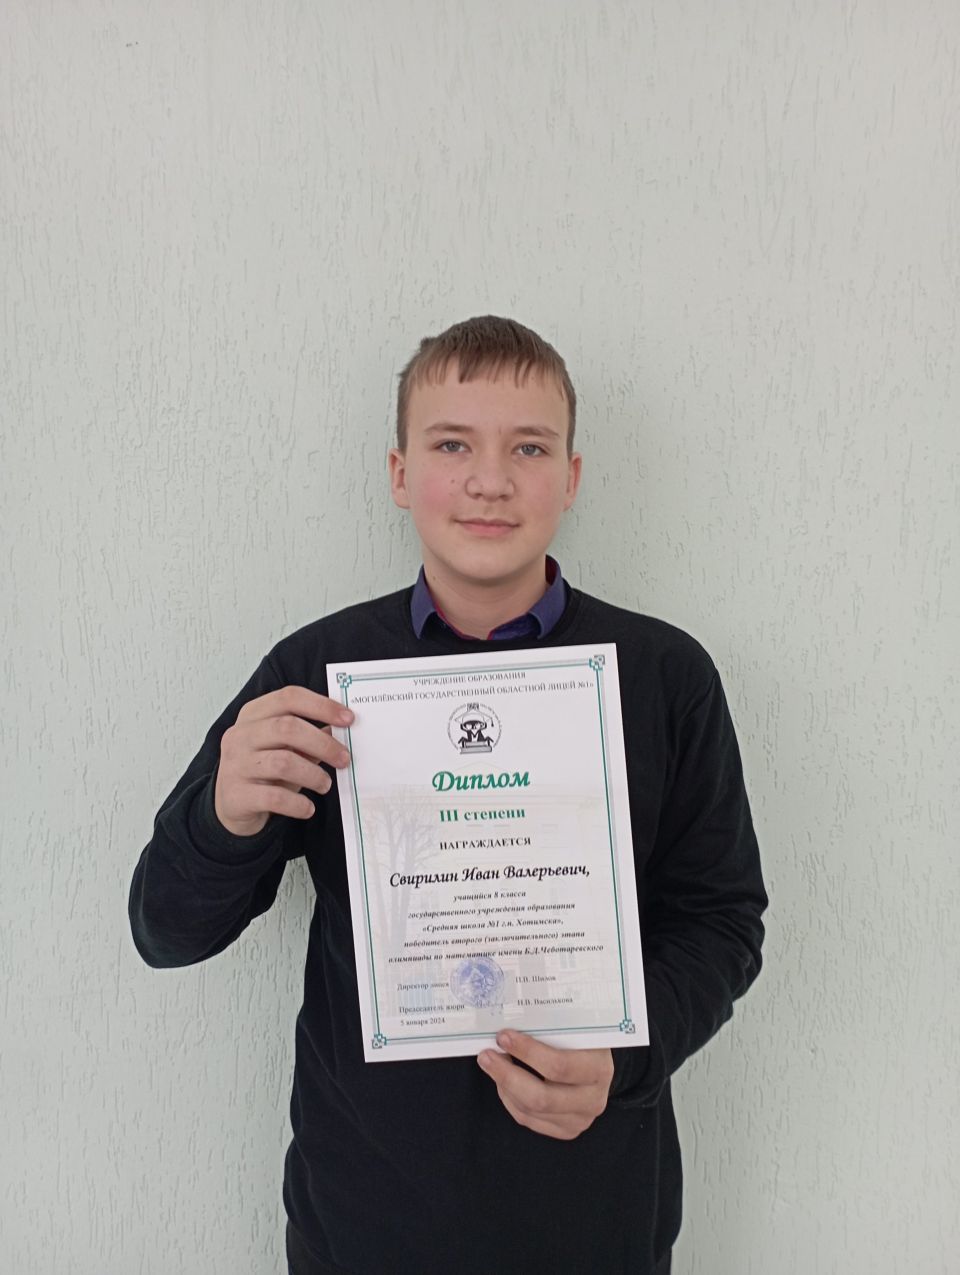 Иван Свирилин награжден Дипломом III степени по итогам олимпиады по математике